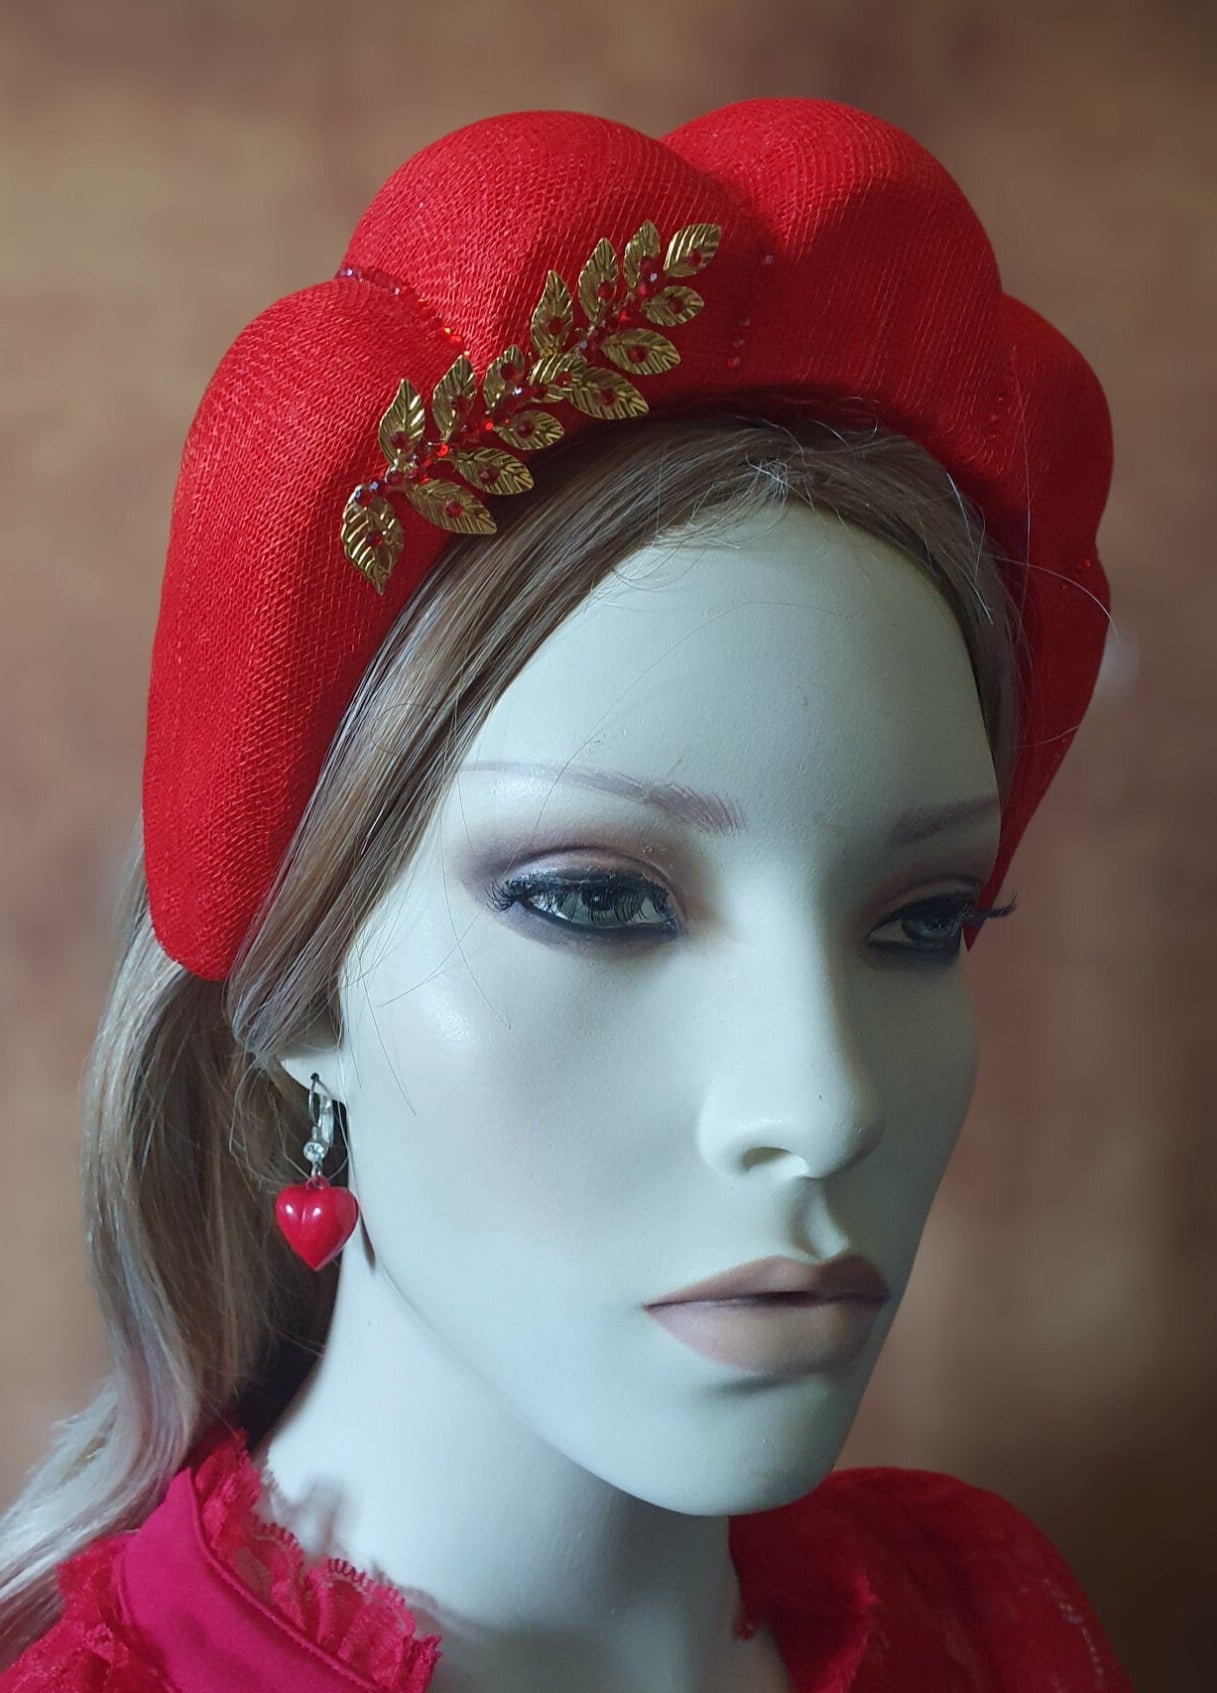 Handgemaakte sinamay hoofdband, haarband voor bruiloft gasten, met metalen bladeren, steentjes voor speciale formele gelegenheden of events.